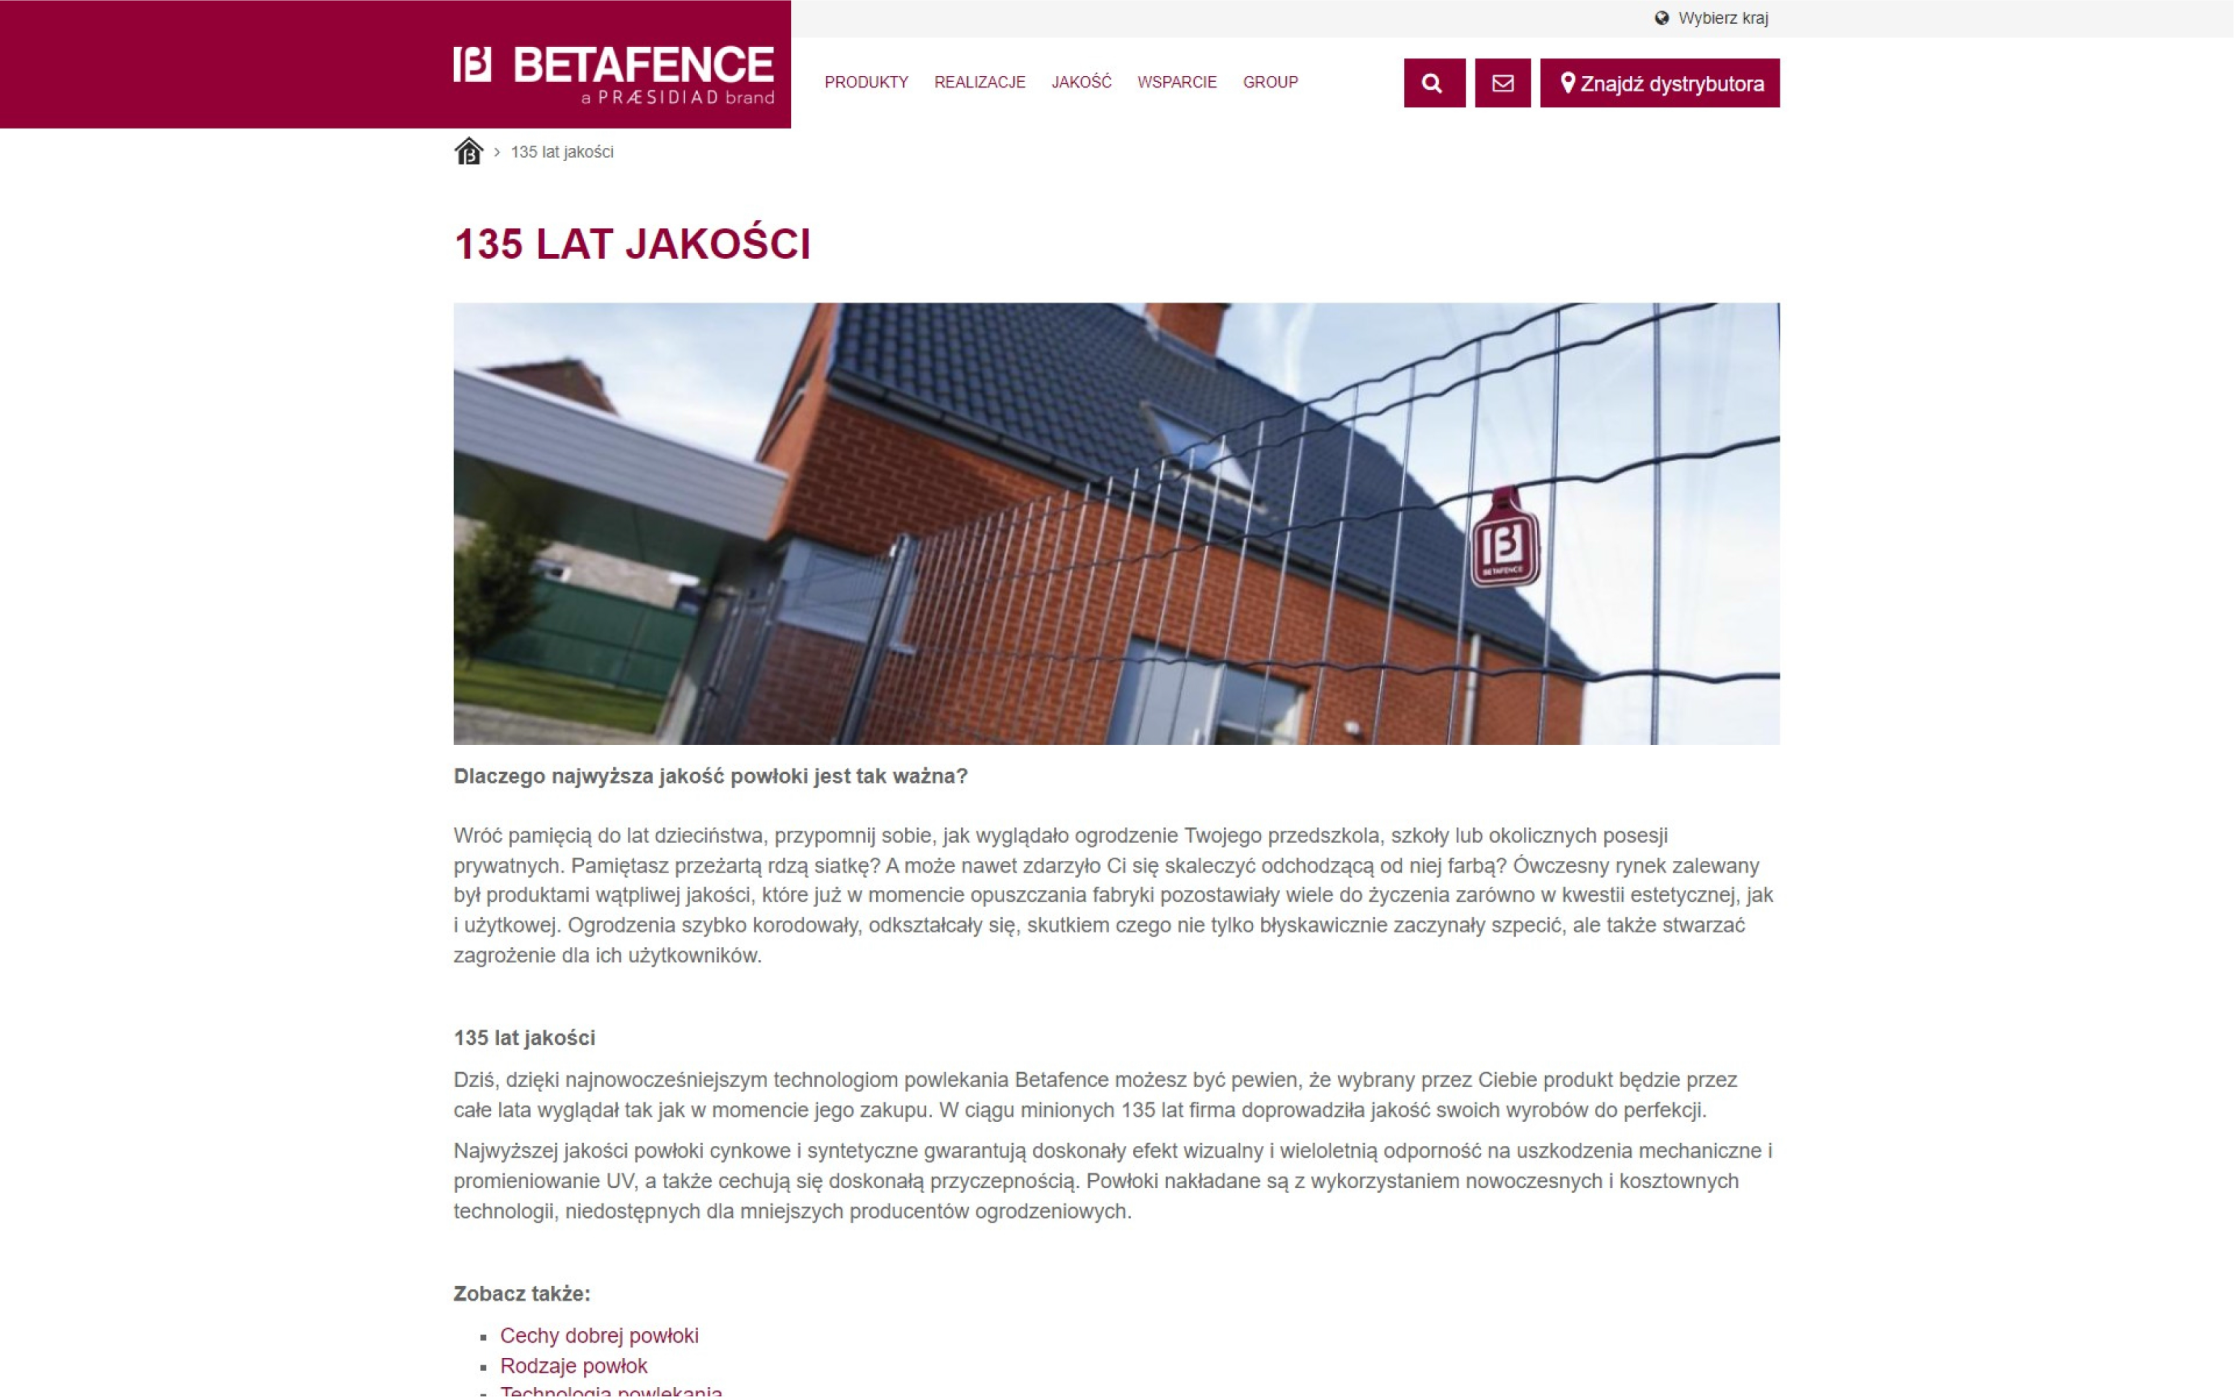 Betafence website